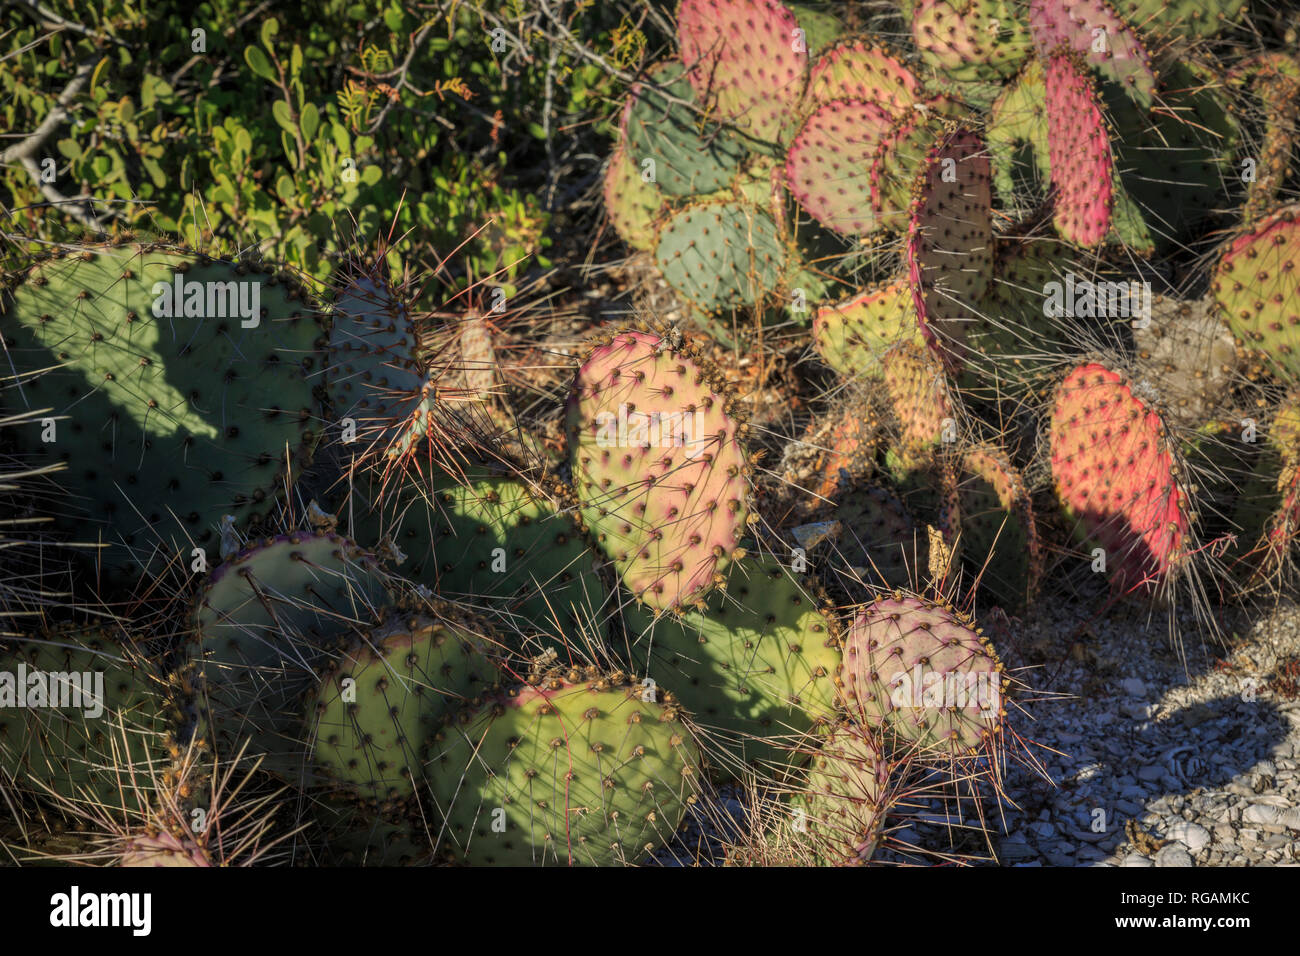 Variedad de colores y tamaños de higo de cactus de tierra. Desierto de Sonora, noroeste de México. Foto de stock